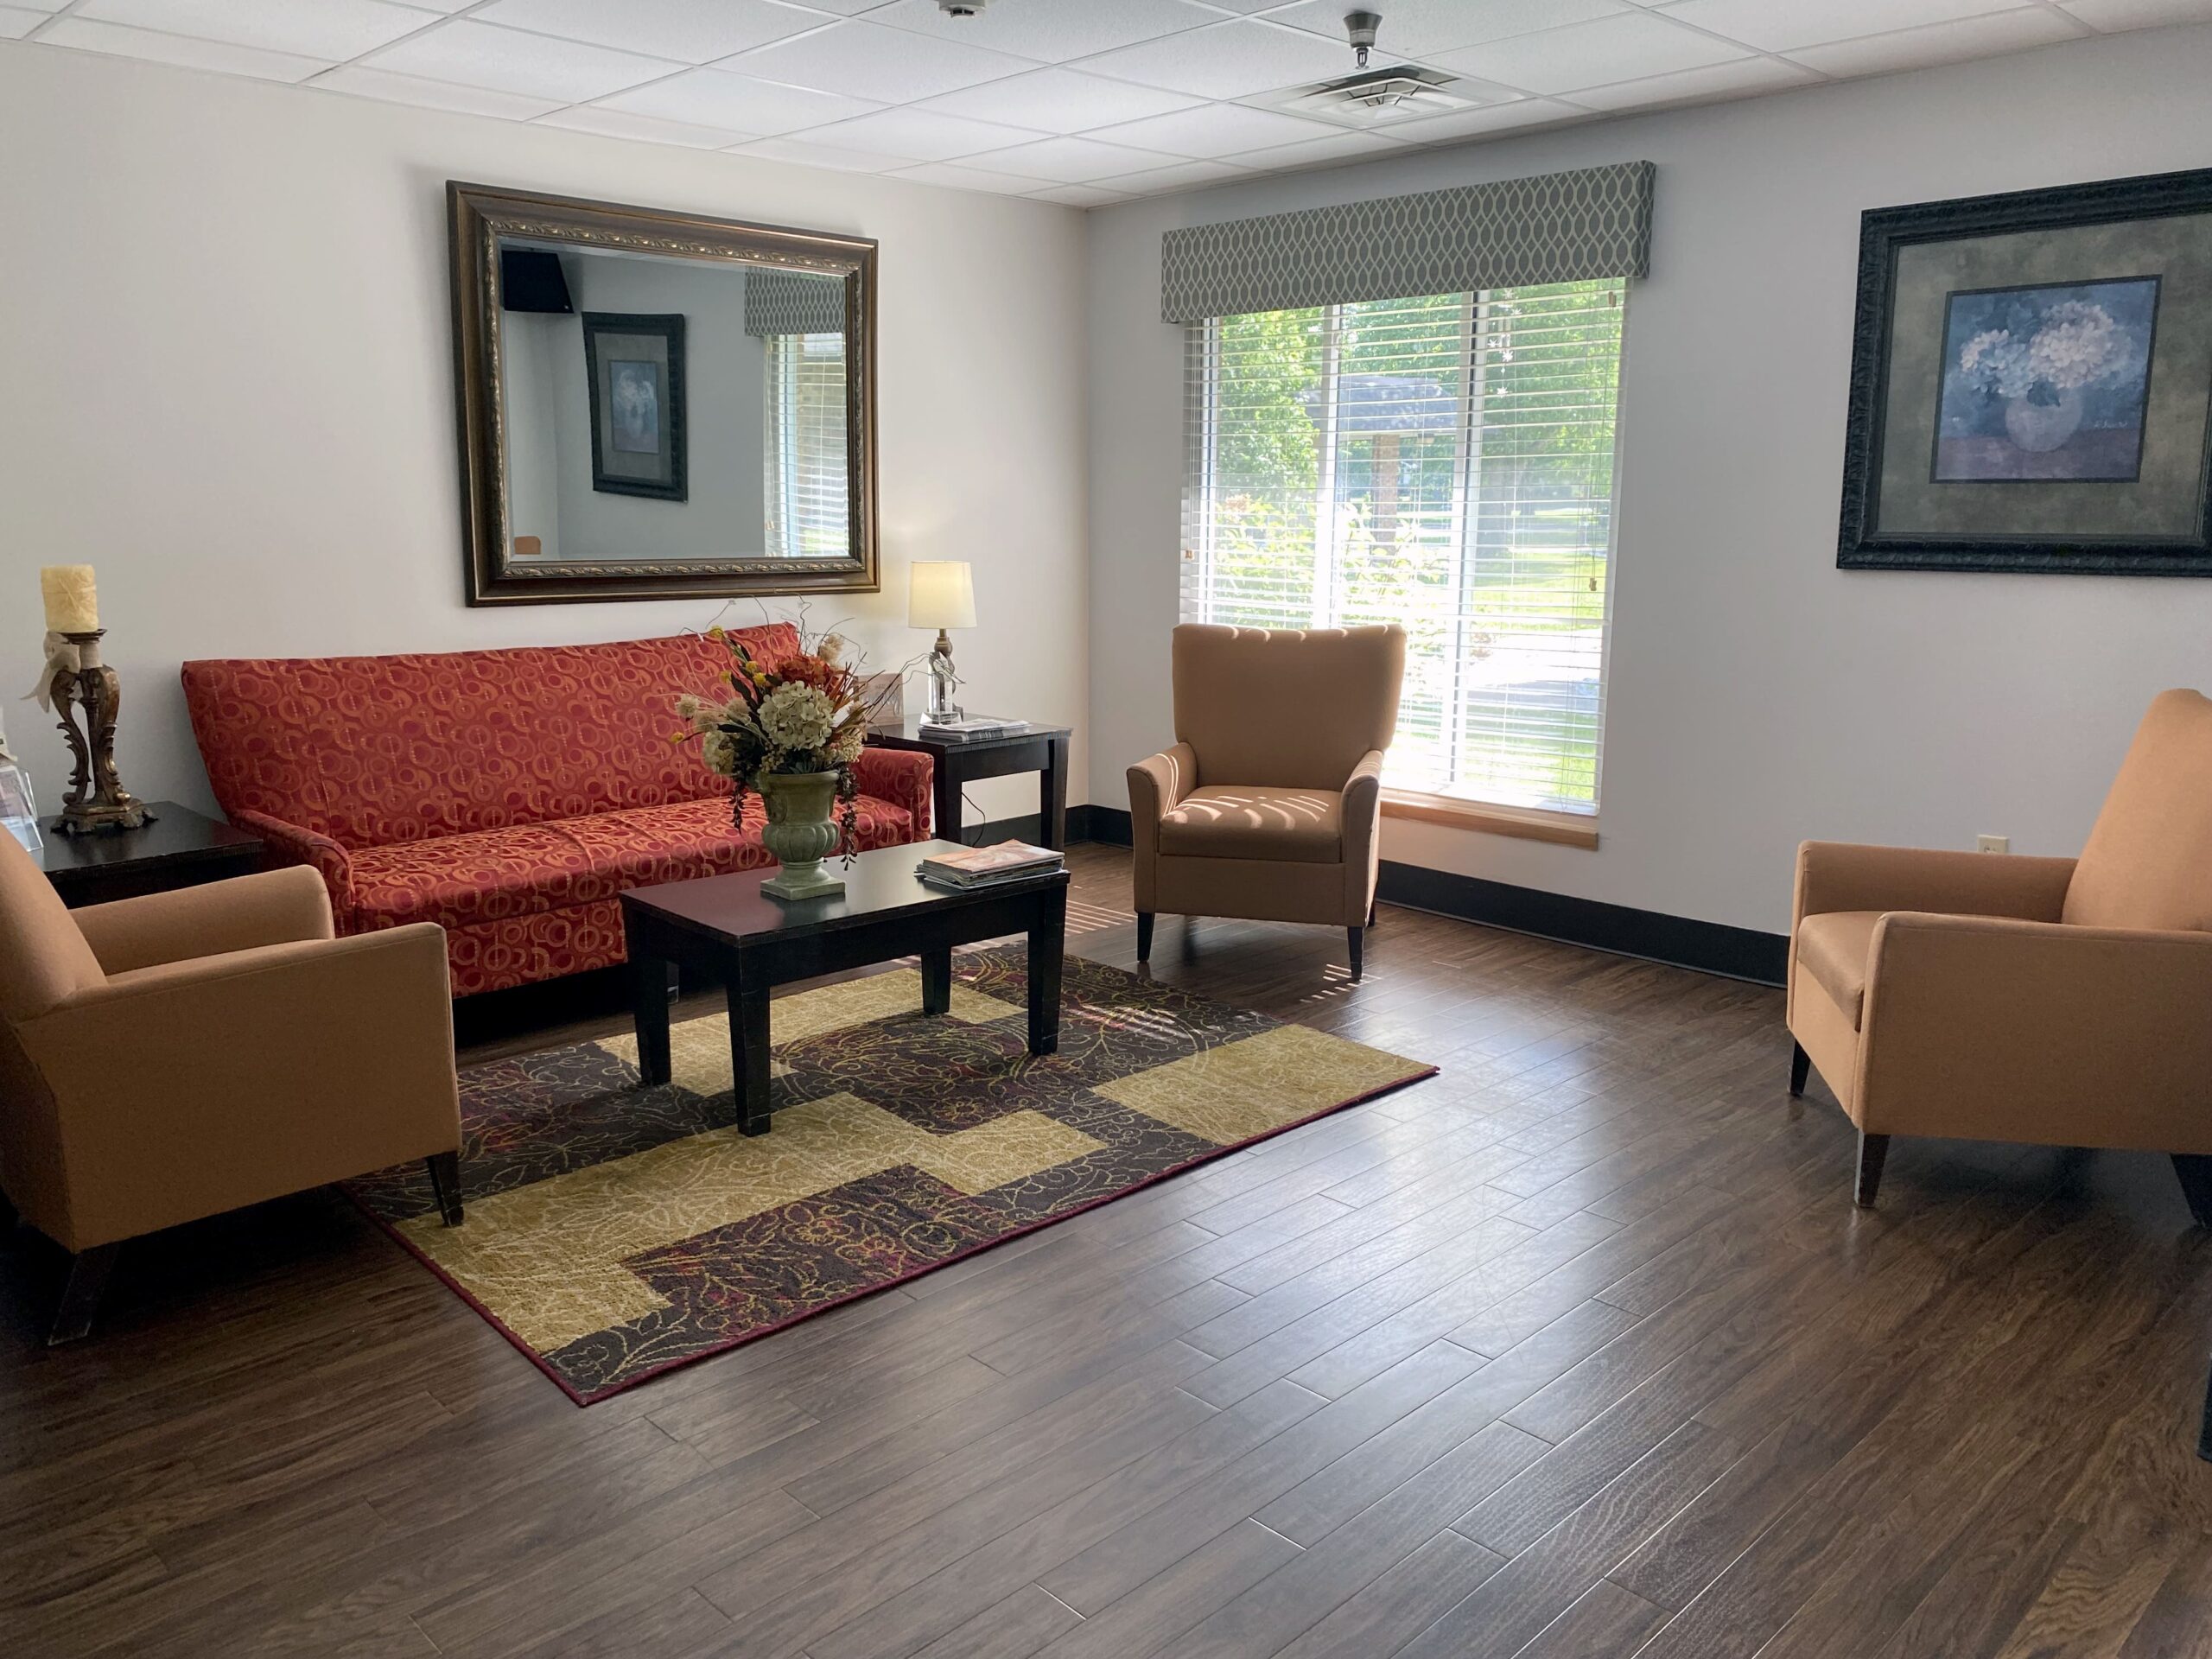 Brickyard Healthcare Terrace Care Center sitting area